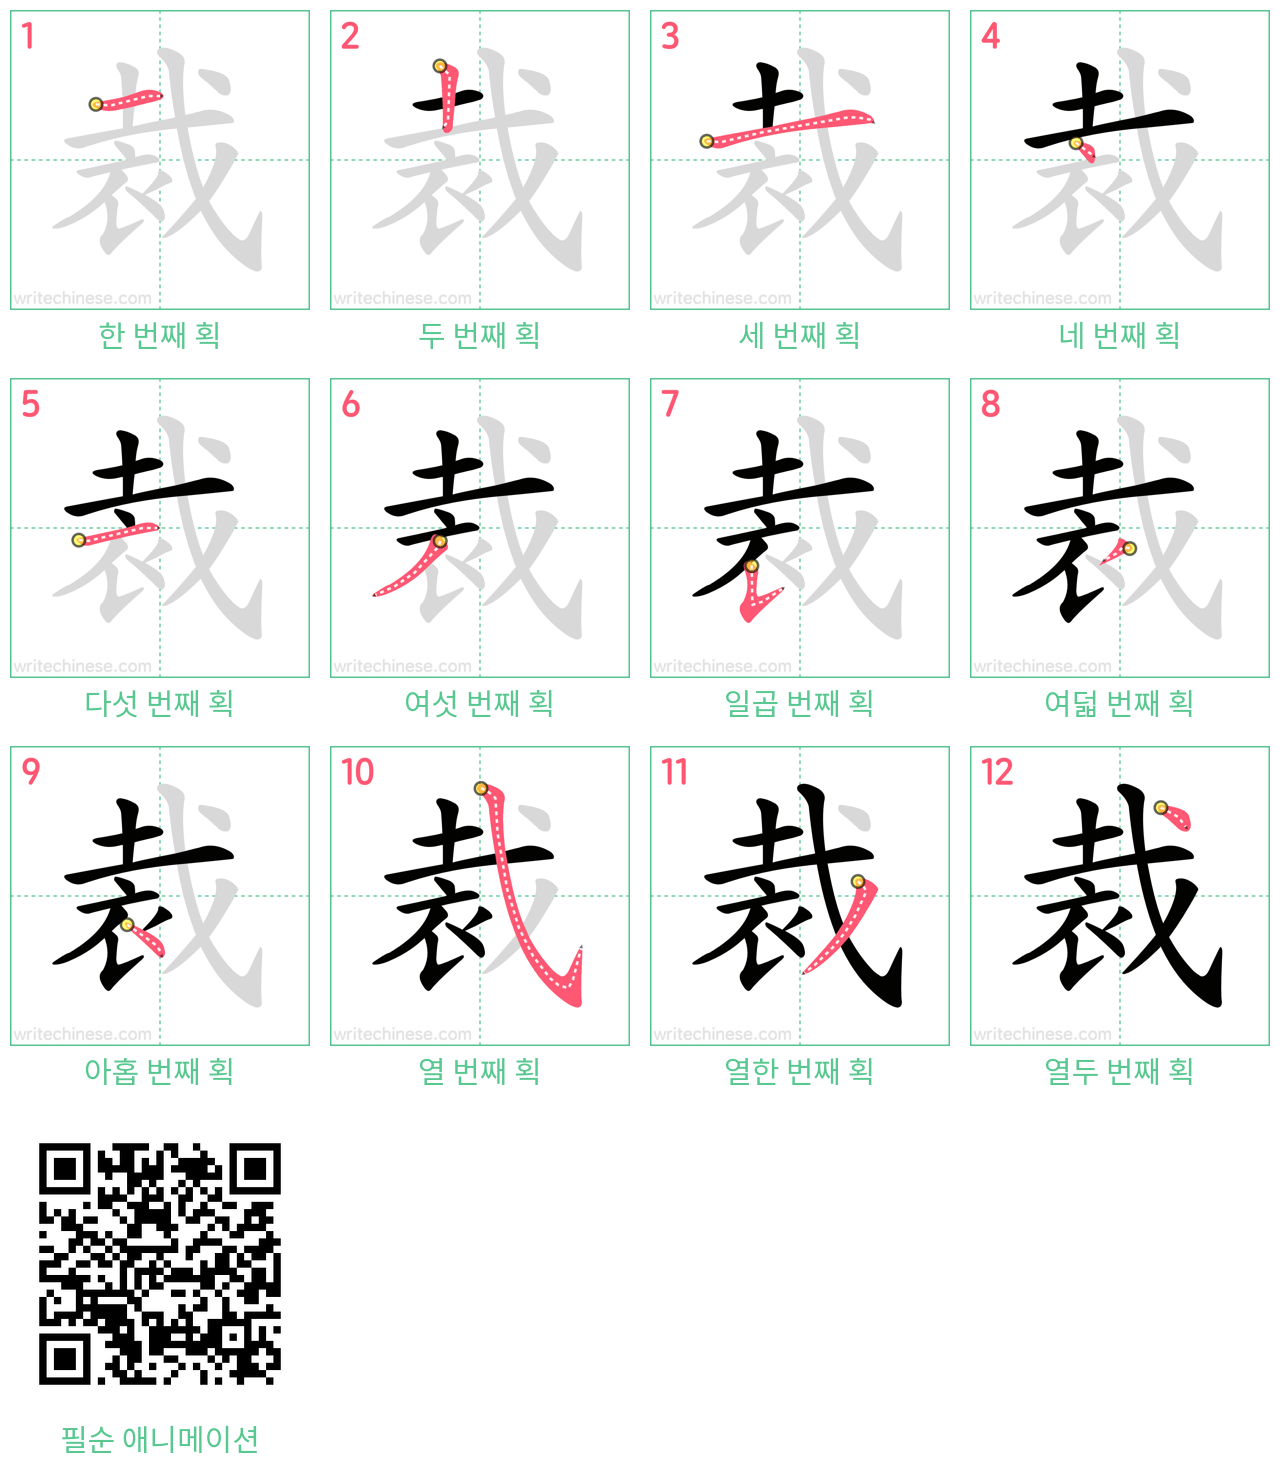 裁 step-by-step stroke order diagrams